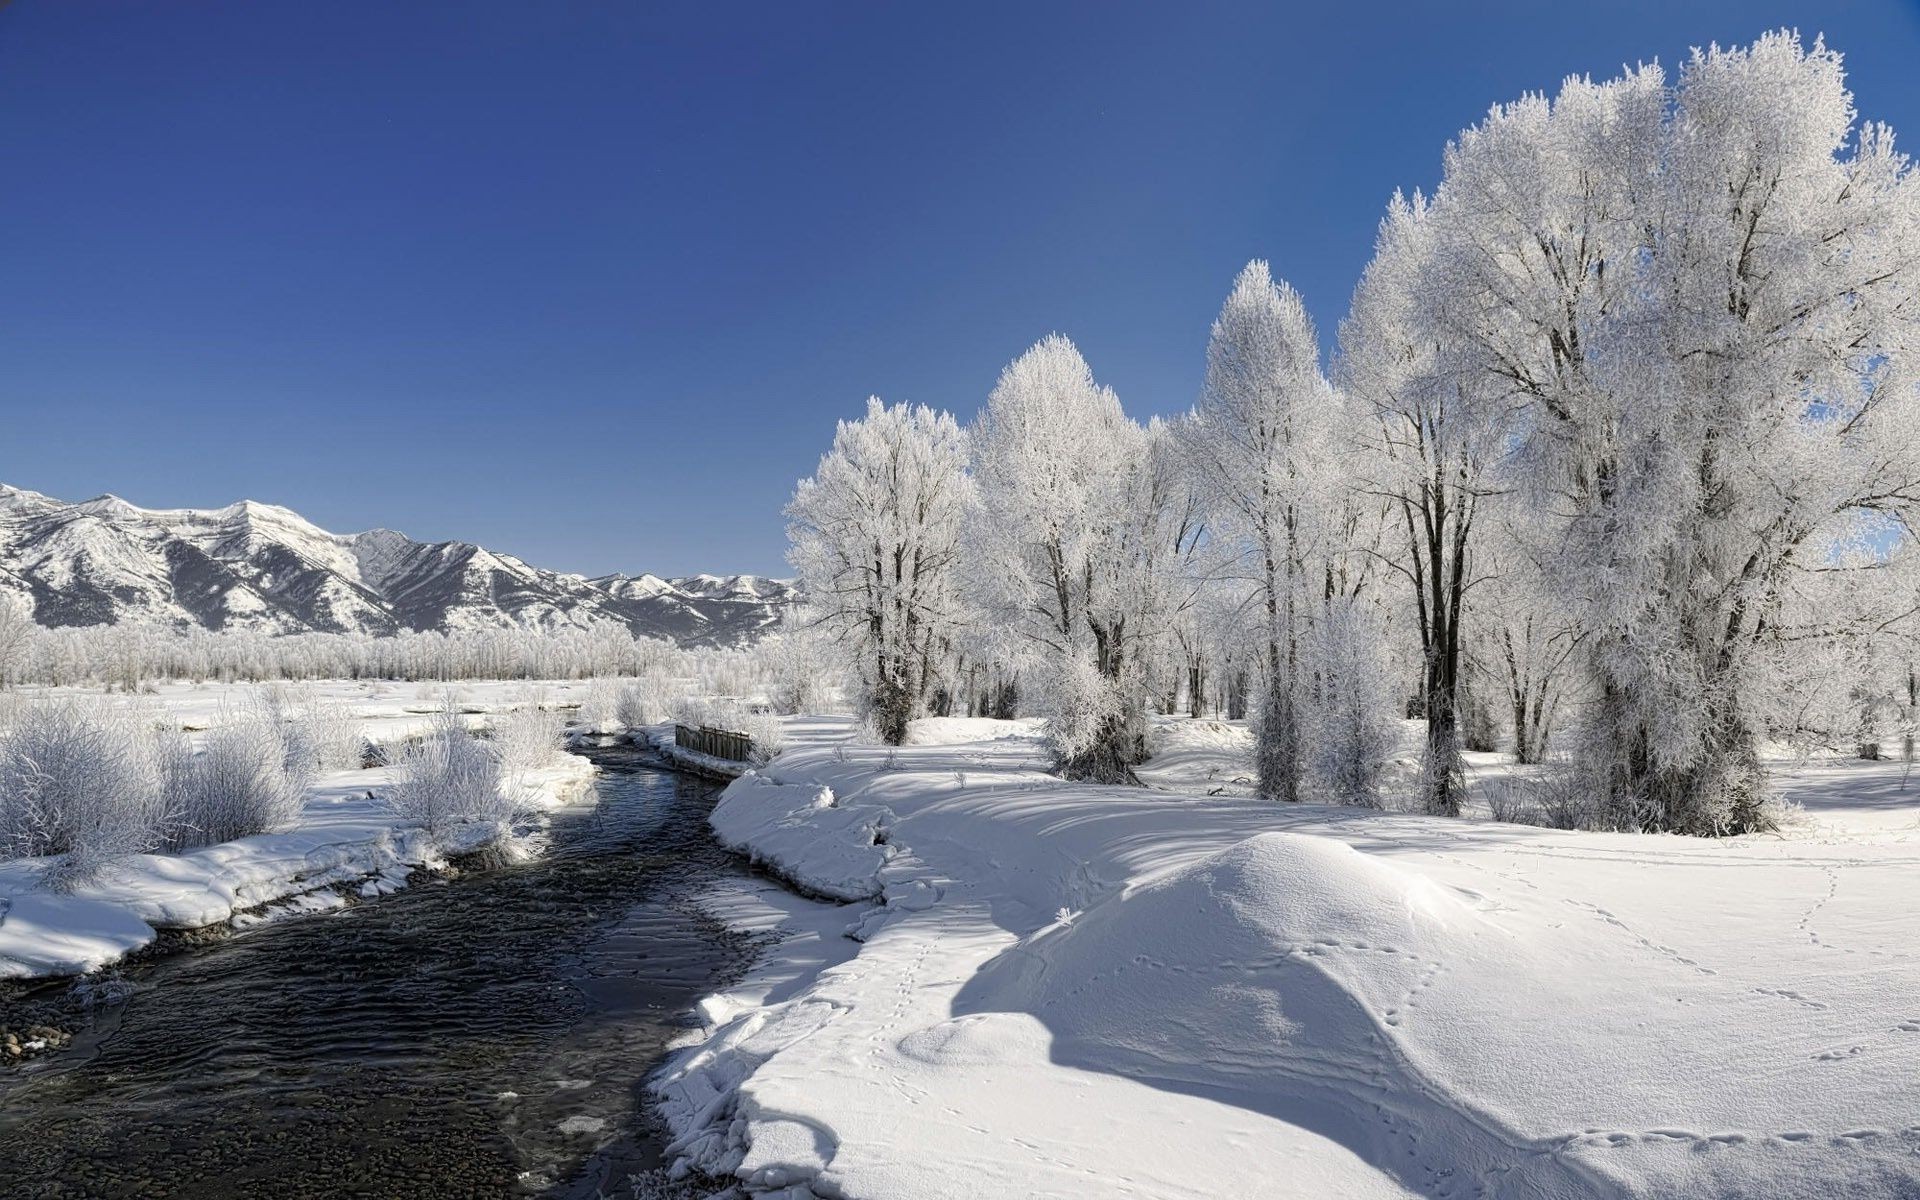 реки пруды и ручьи прудов и ручьев снег зима холодная мороз лед замороженные пейзаж древесины погода дерево морозный живописный горы